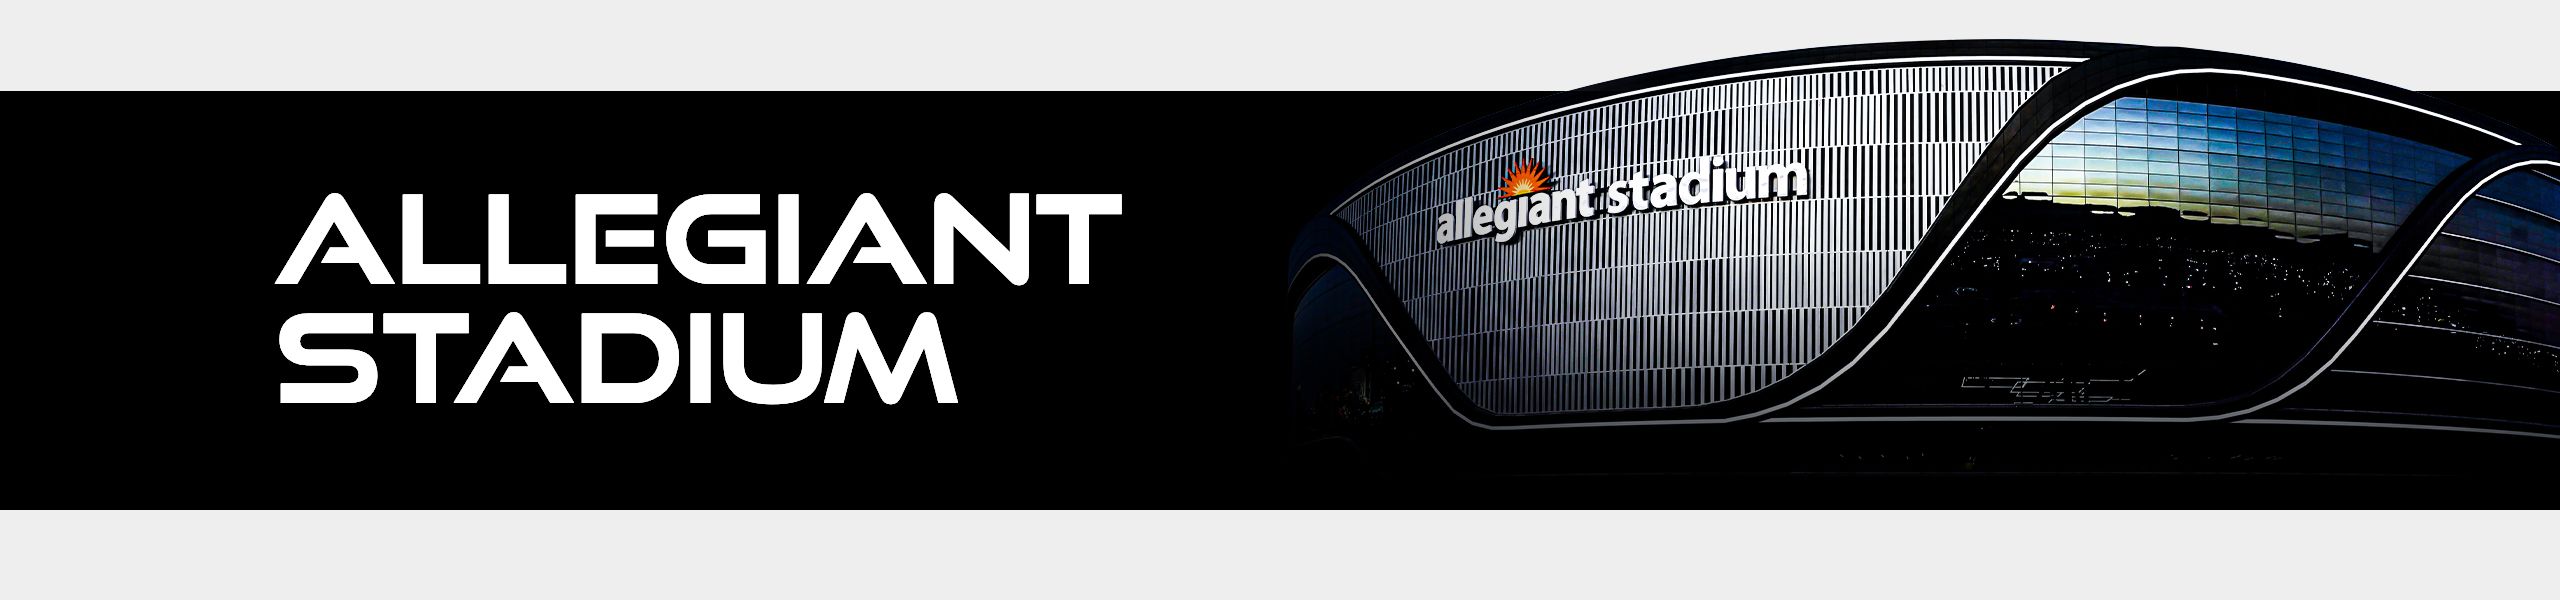 Official Website of Allegiant Stadium